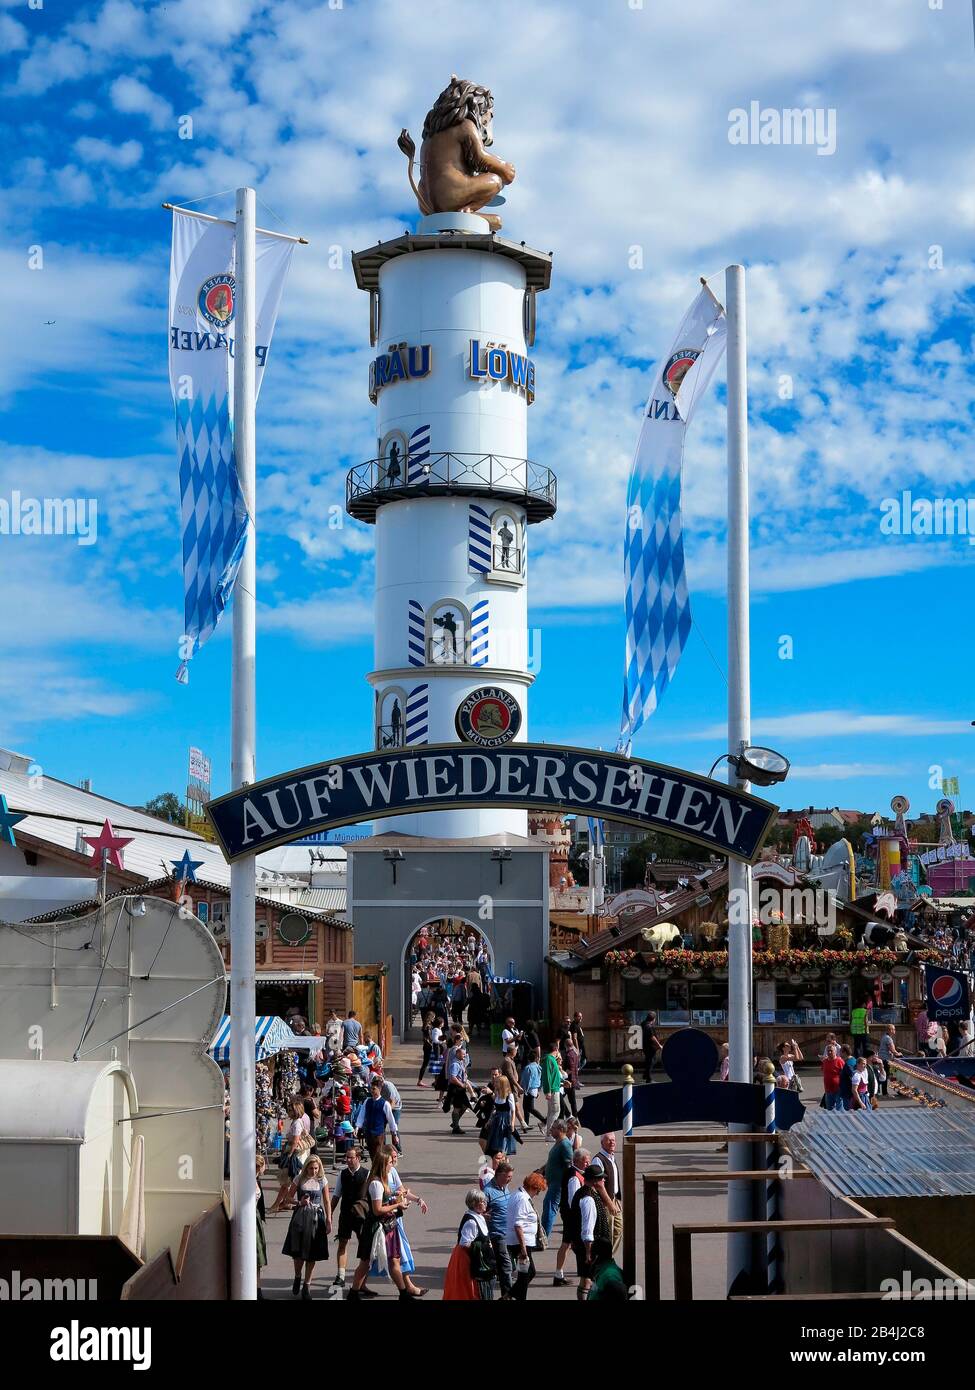 Germany, Bavaria, Munich, Oktoberfest, Löwenbräu, beer tower with lion, beer garden, sign 'goodbye' Stock Photo